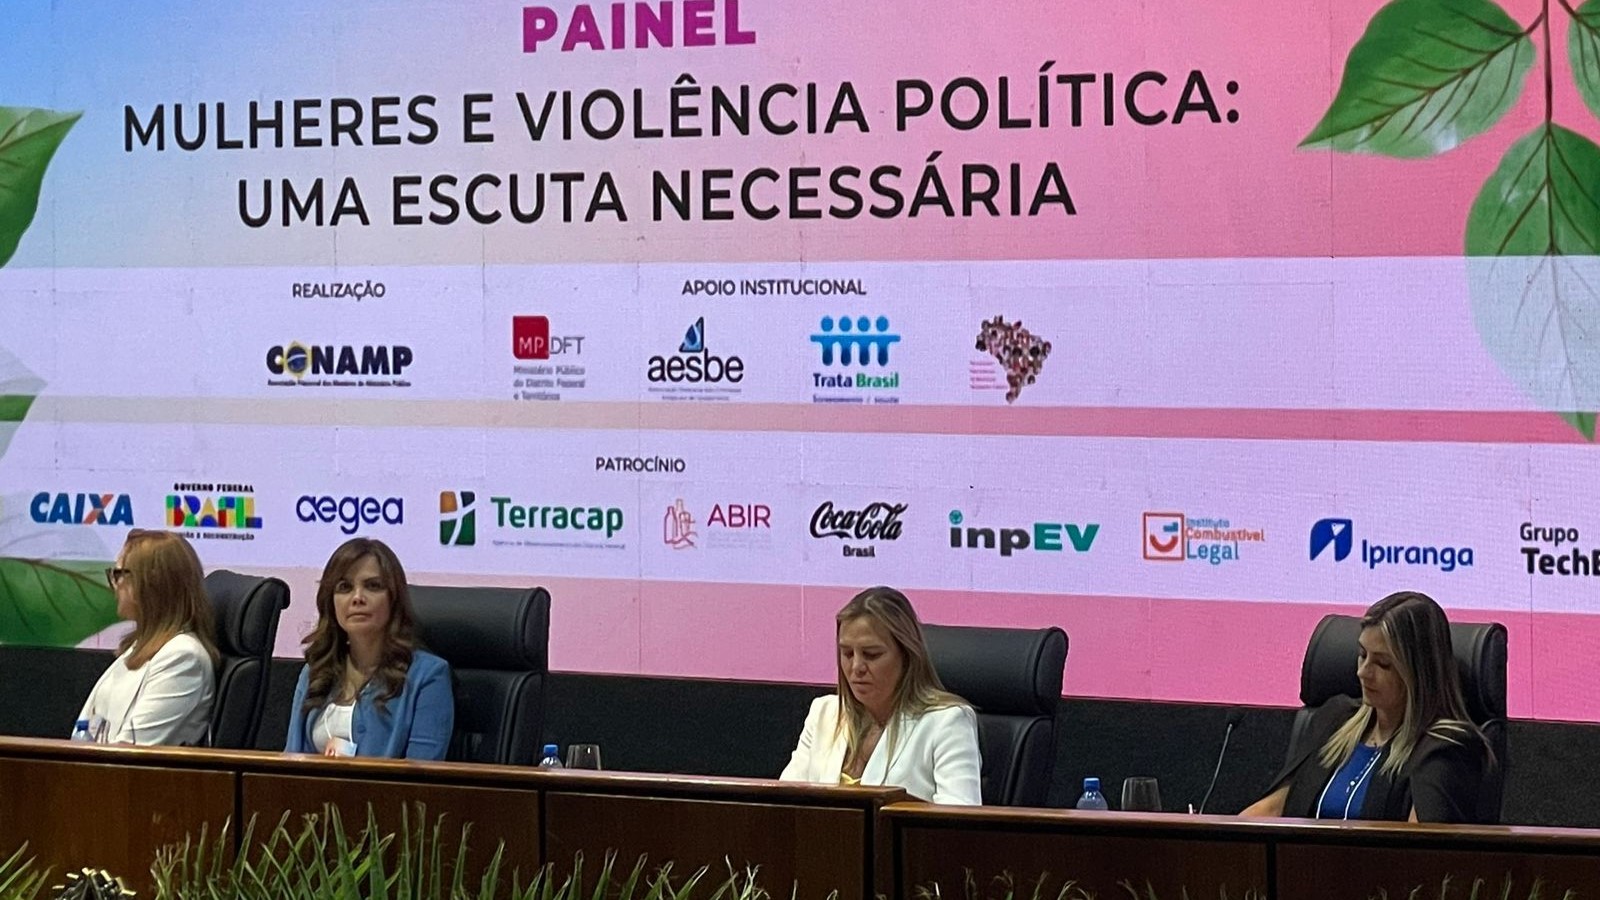 Karine Camargo Teixeira relatora do painel "Mulheres e Violência Política: Uma Escuta Necessária"